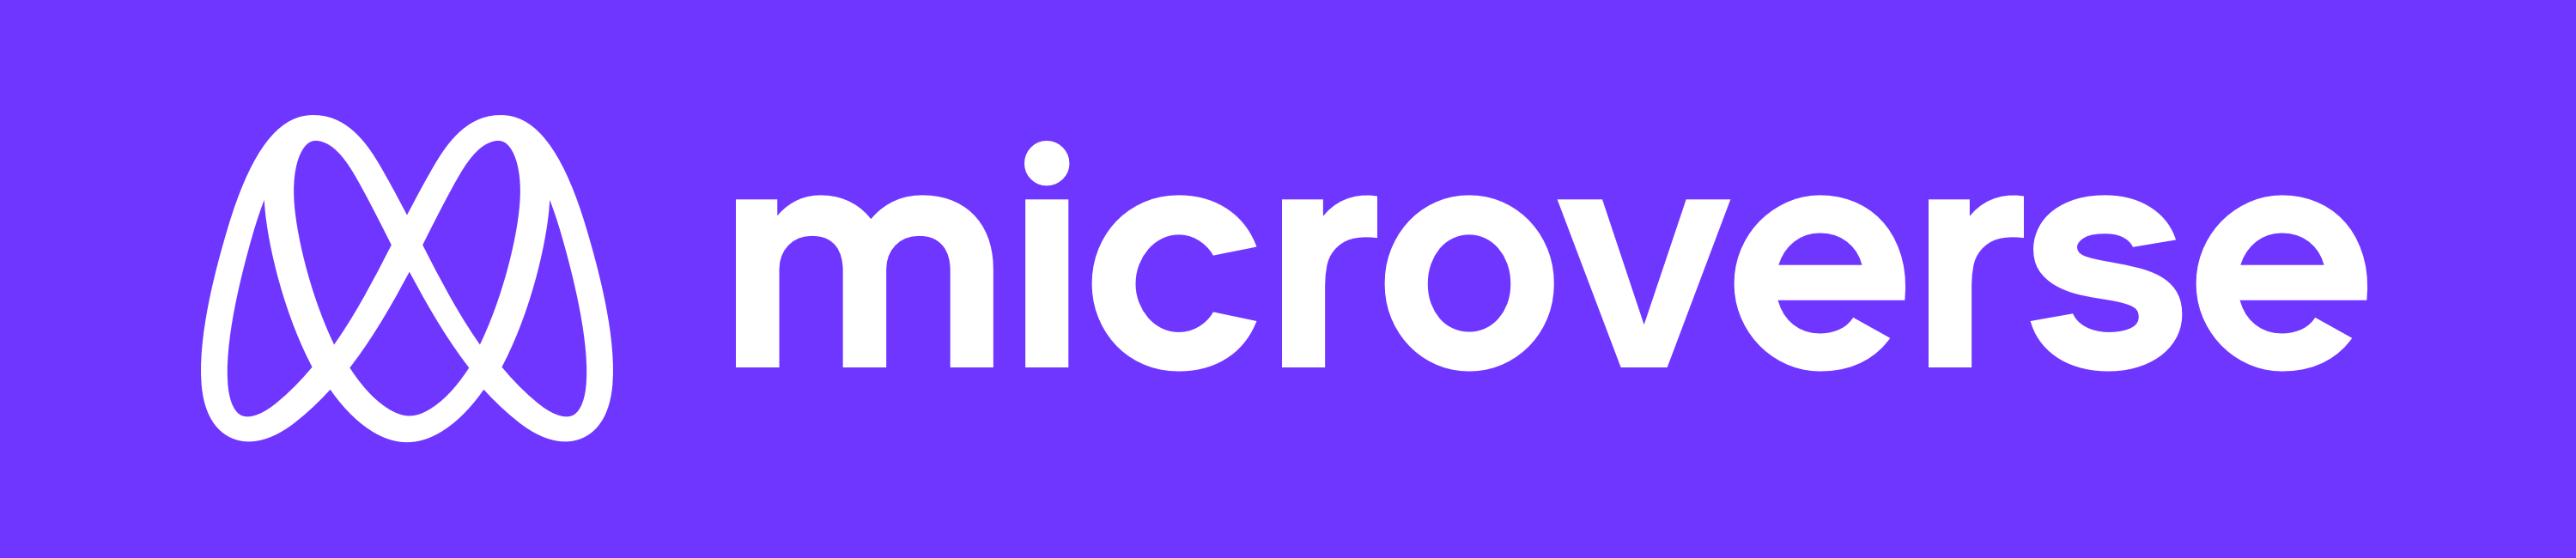 go.microverse.org